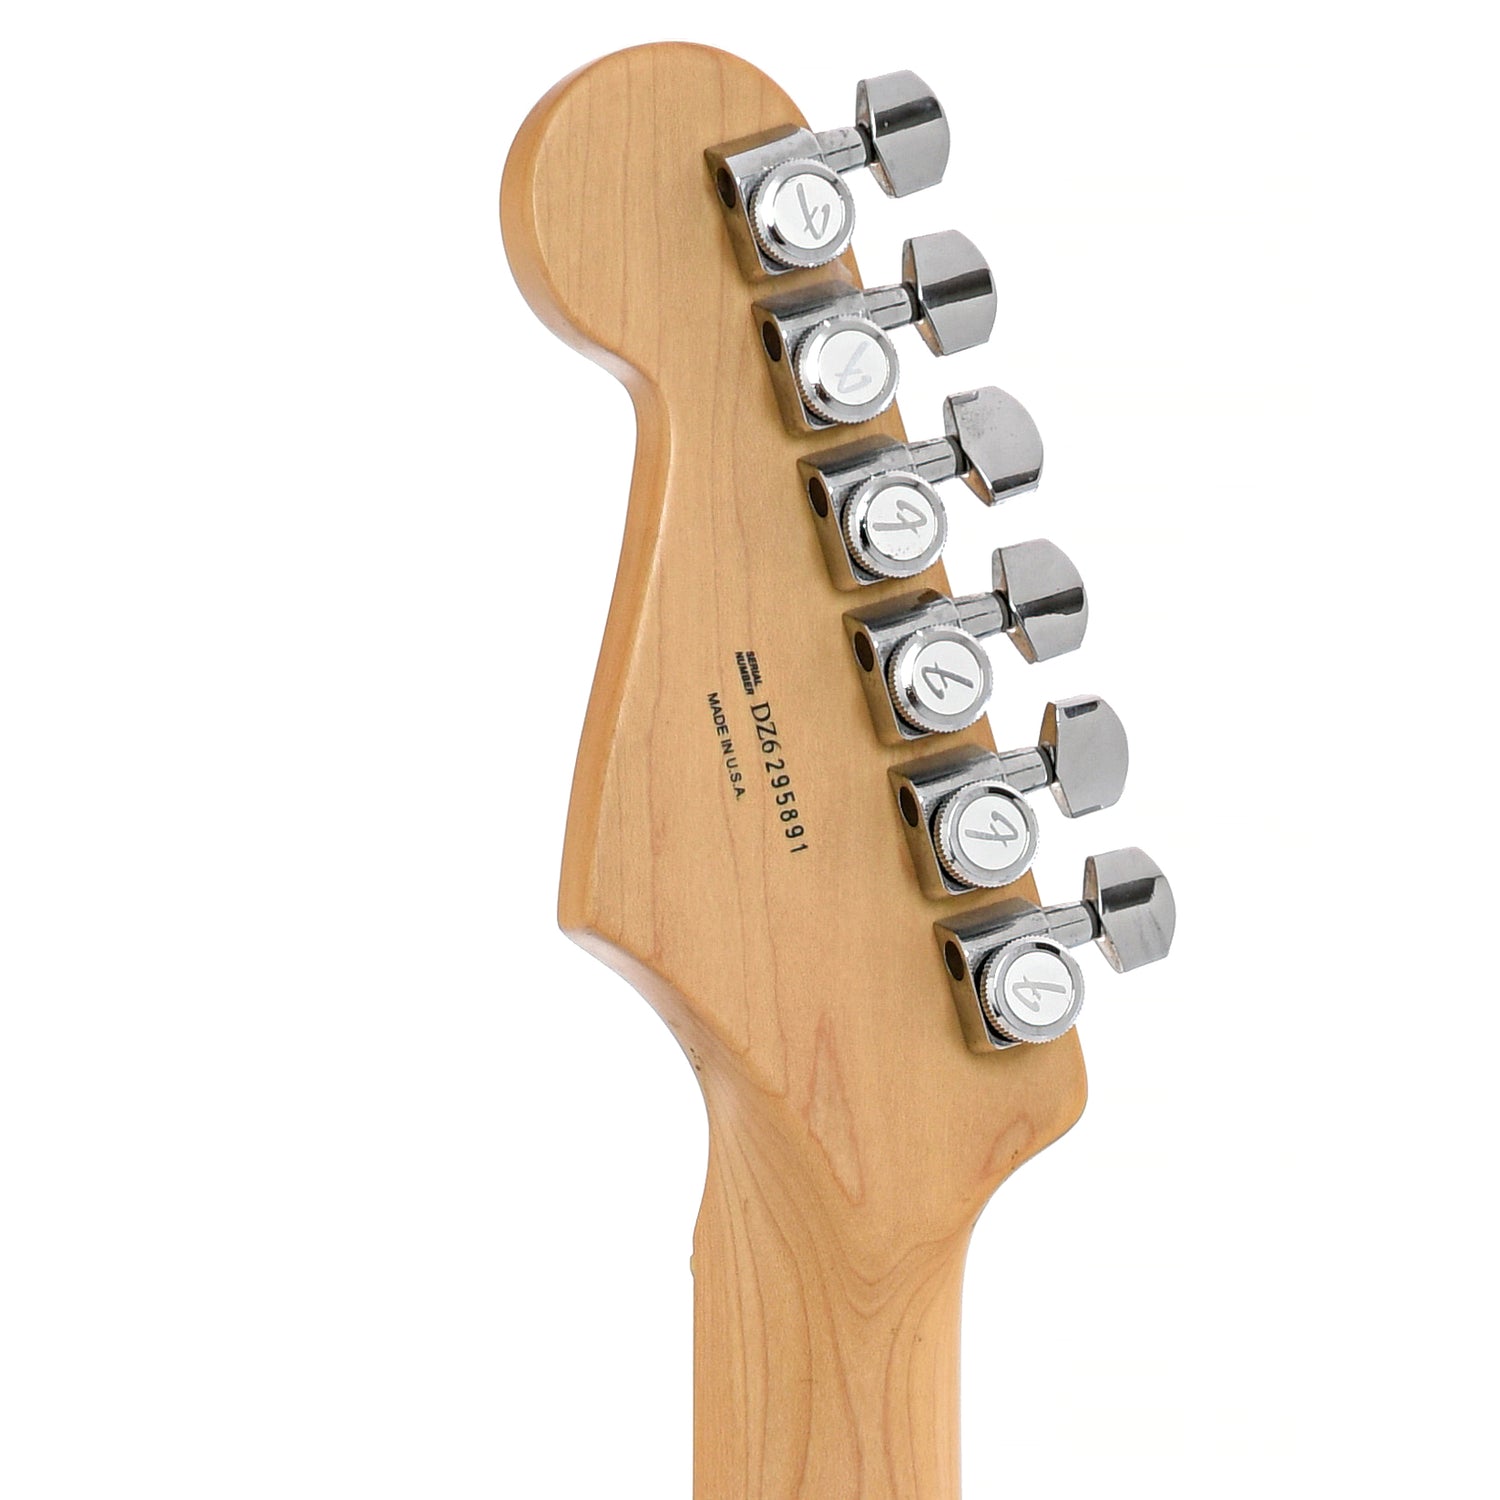 BAck headstock of Fender Stratocaster